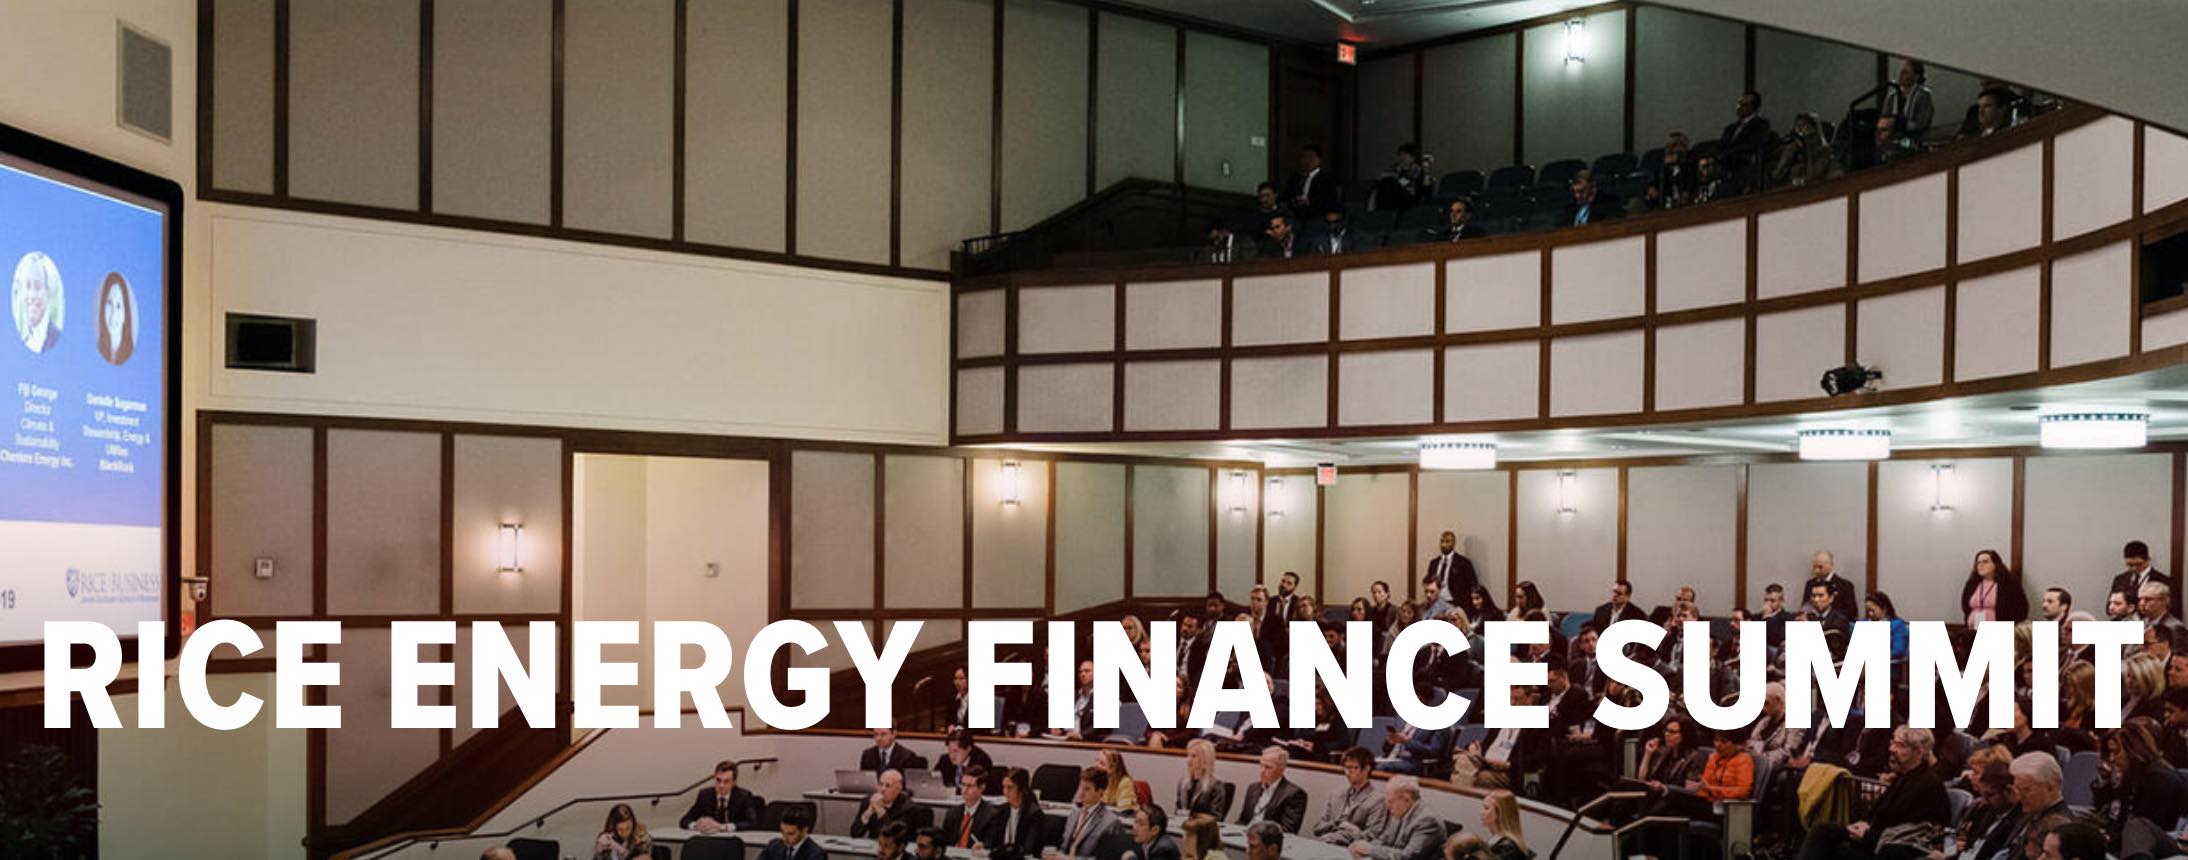 Ahmad Atwan Speaks @ Rice Energy Finance Summit